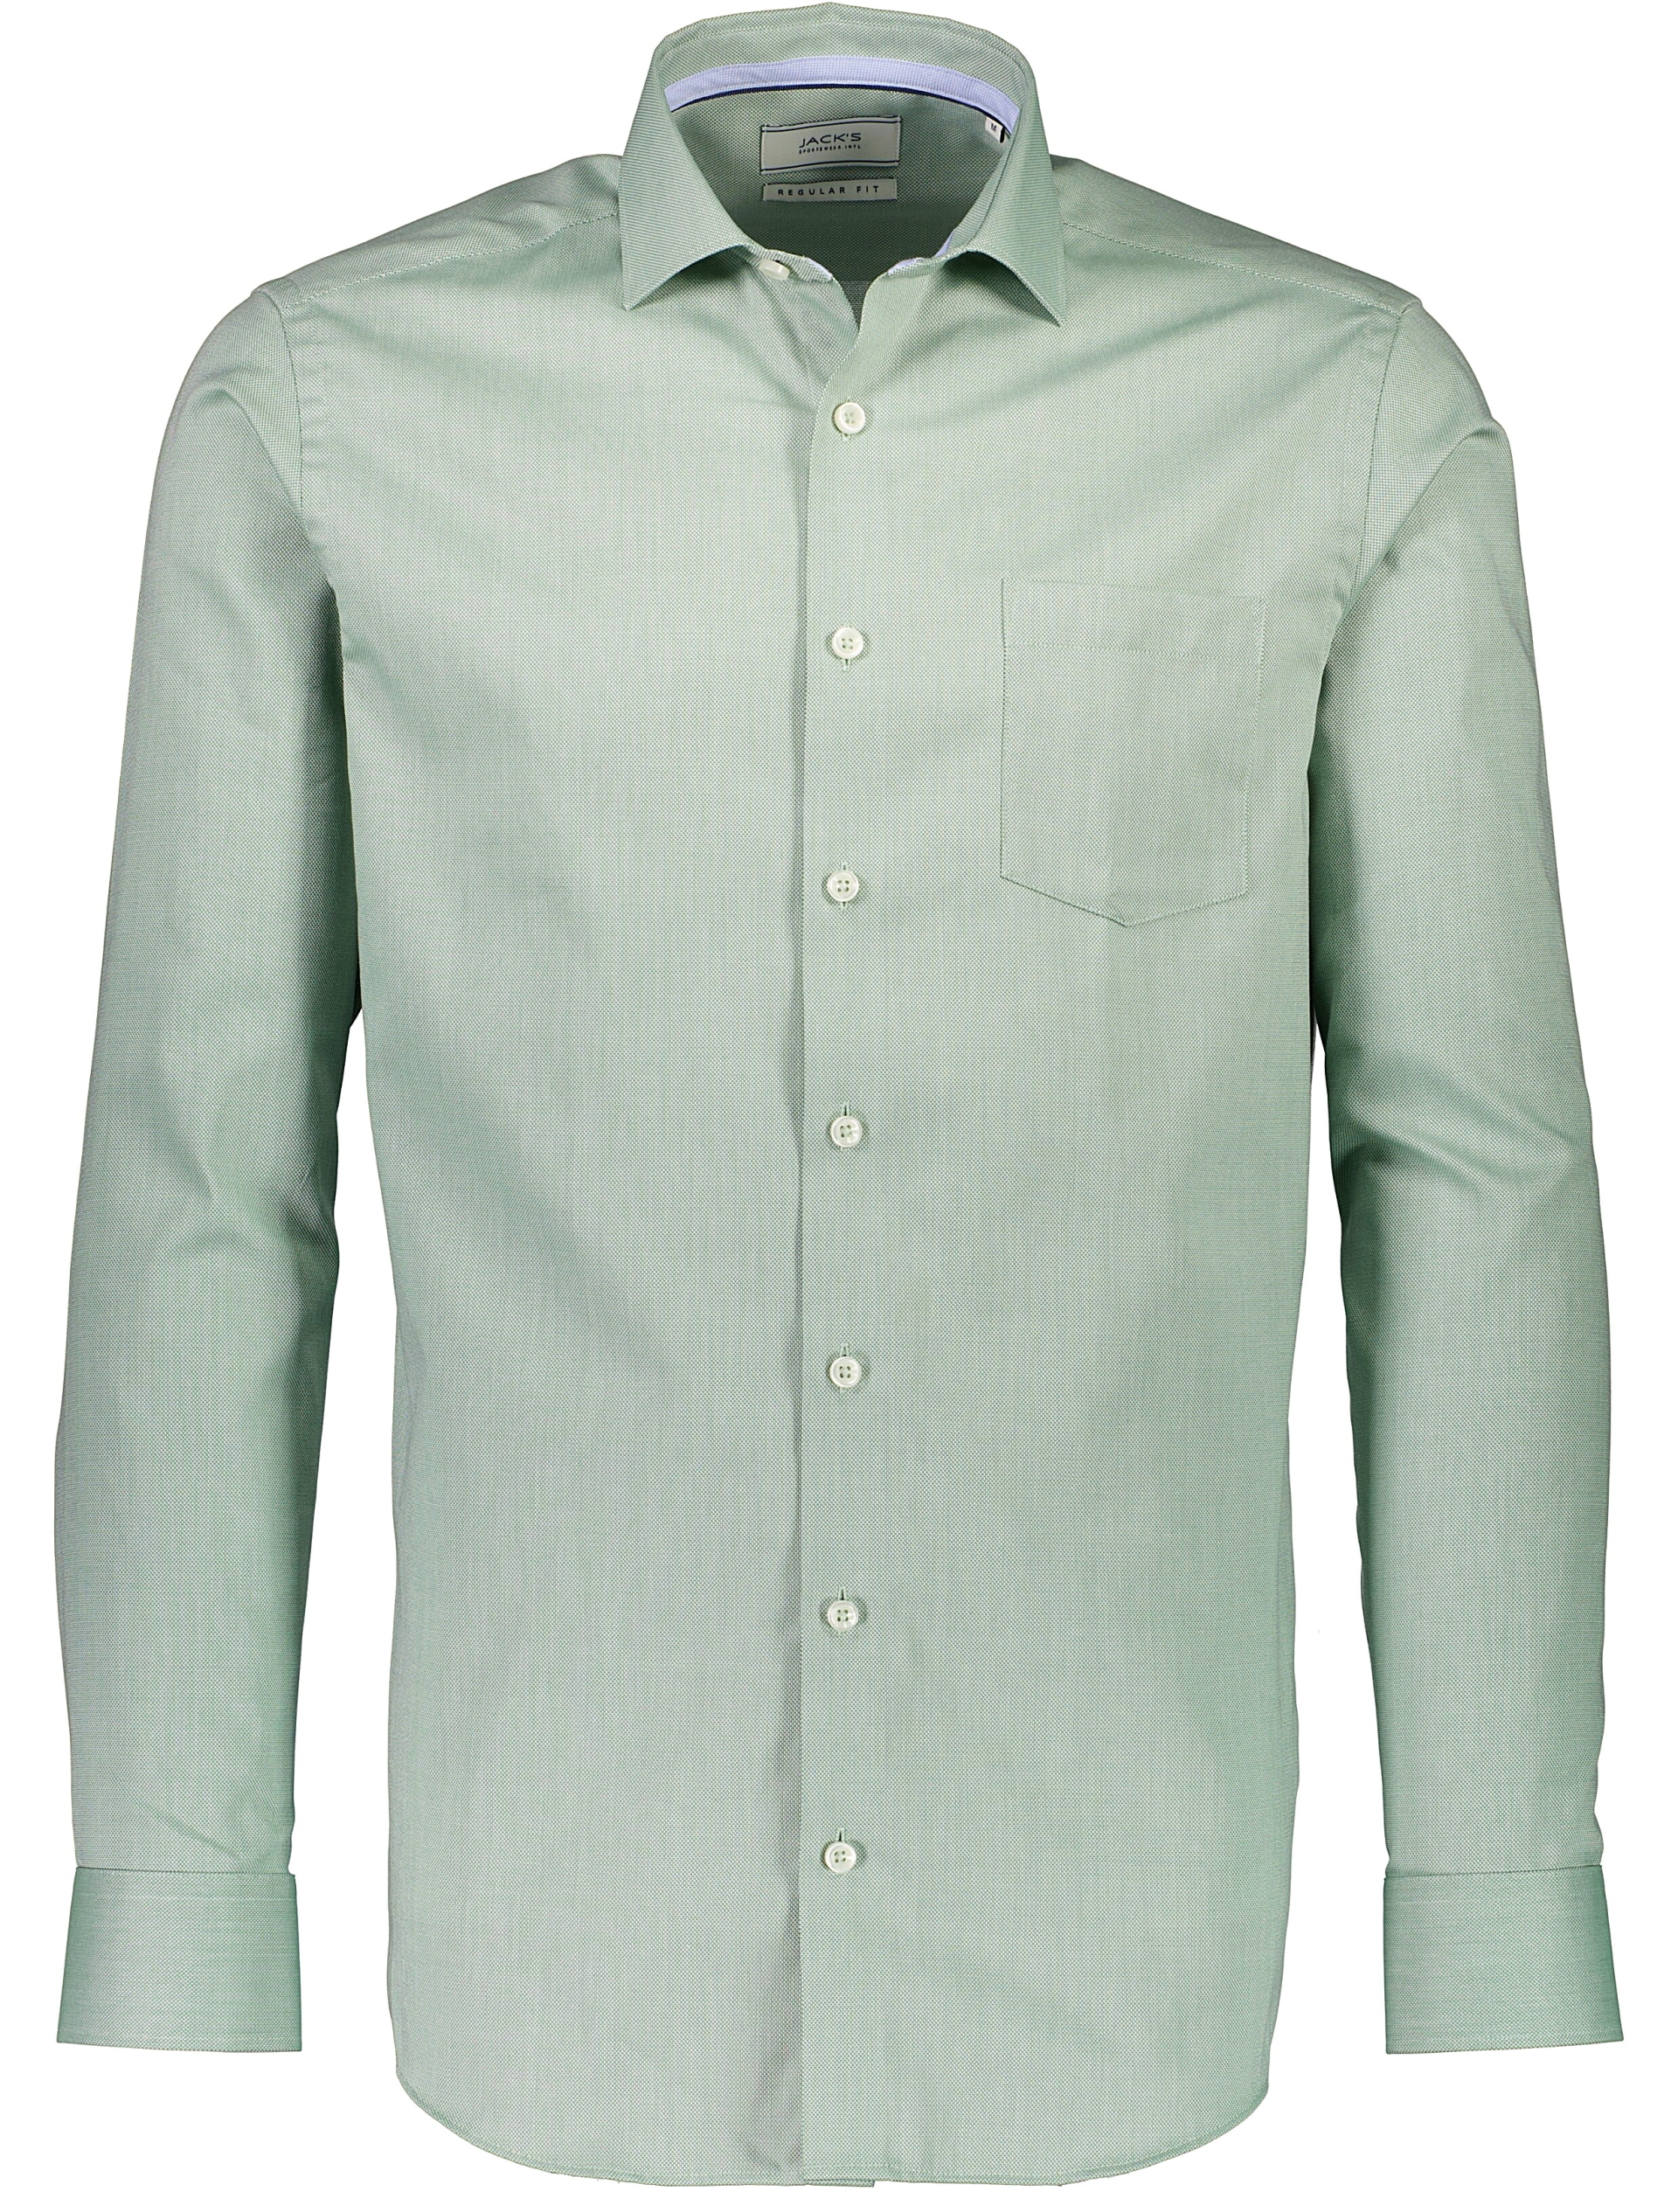 Morgan Casual skjorte grøn / light green